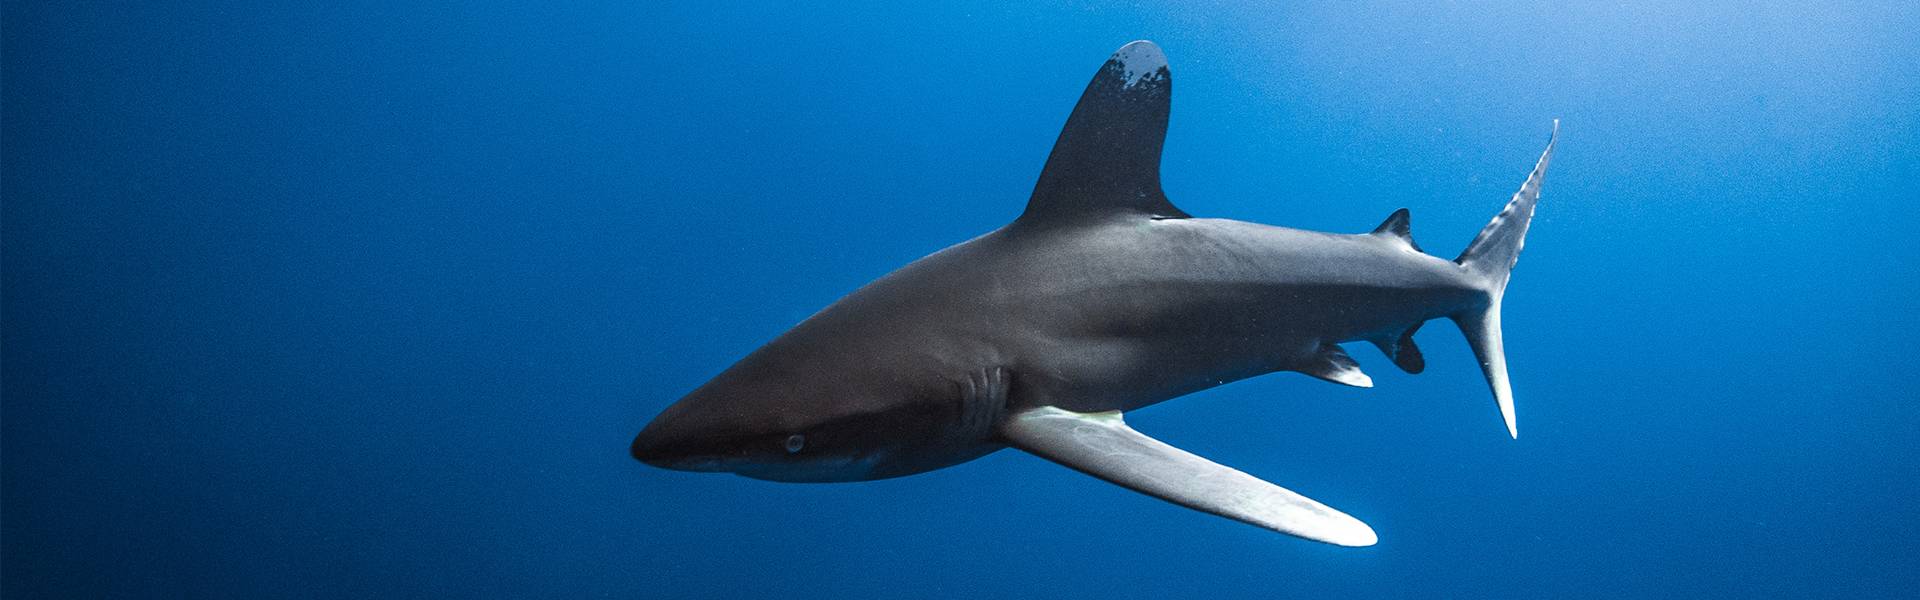 Haie des Roten Meeres; Das vernünftige und empfindliche Raubtier